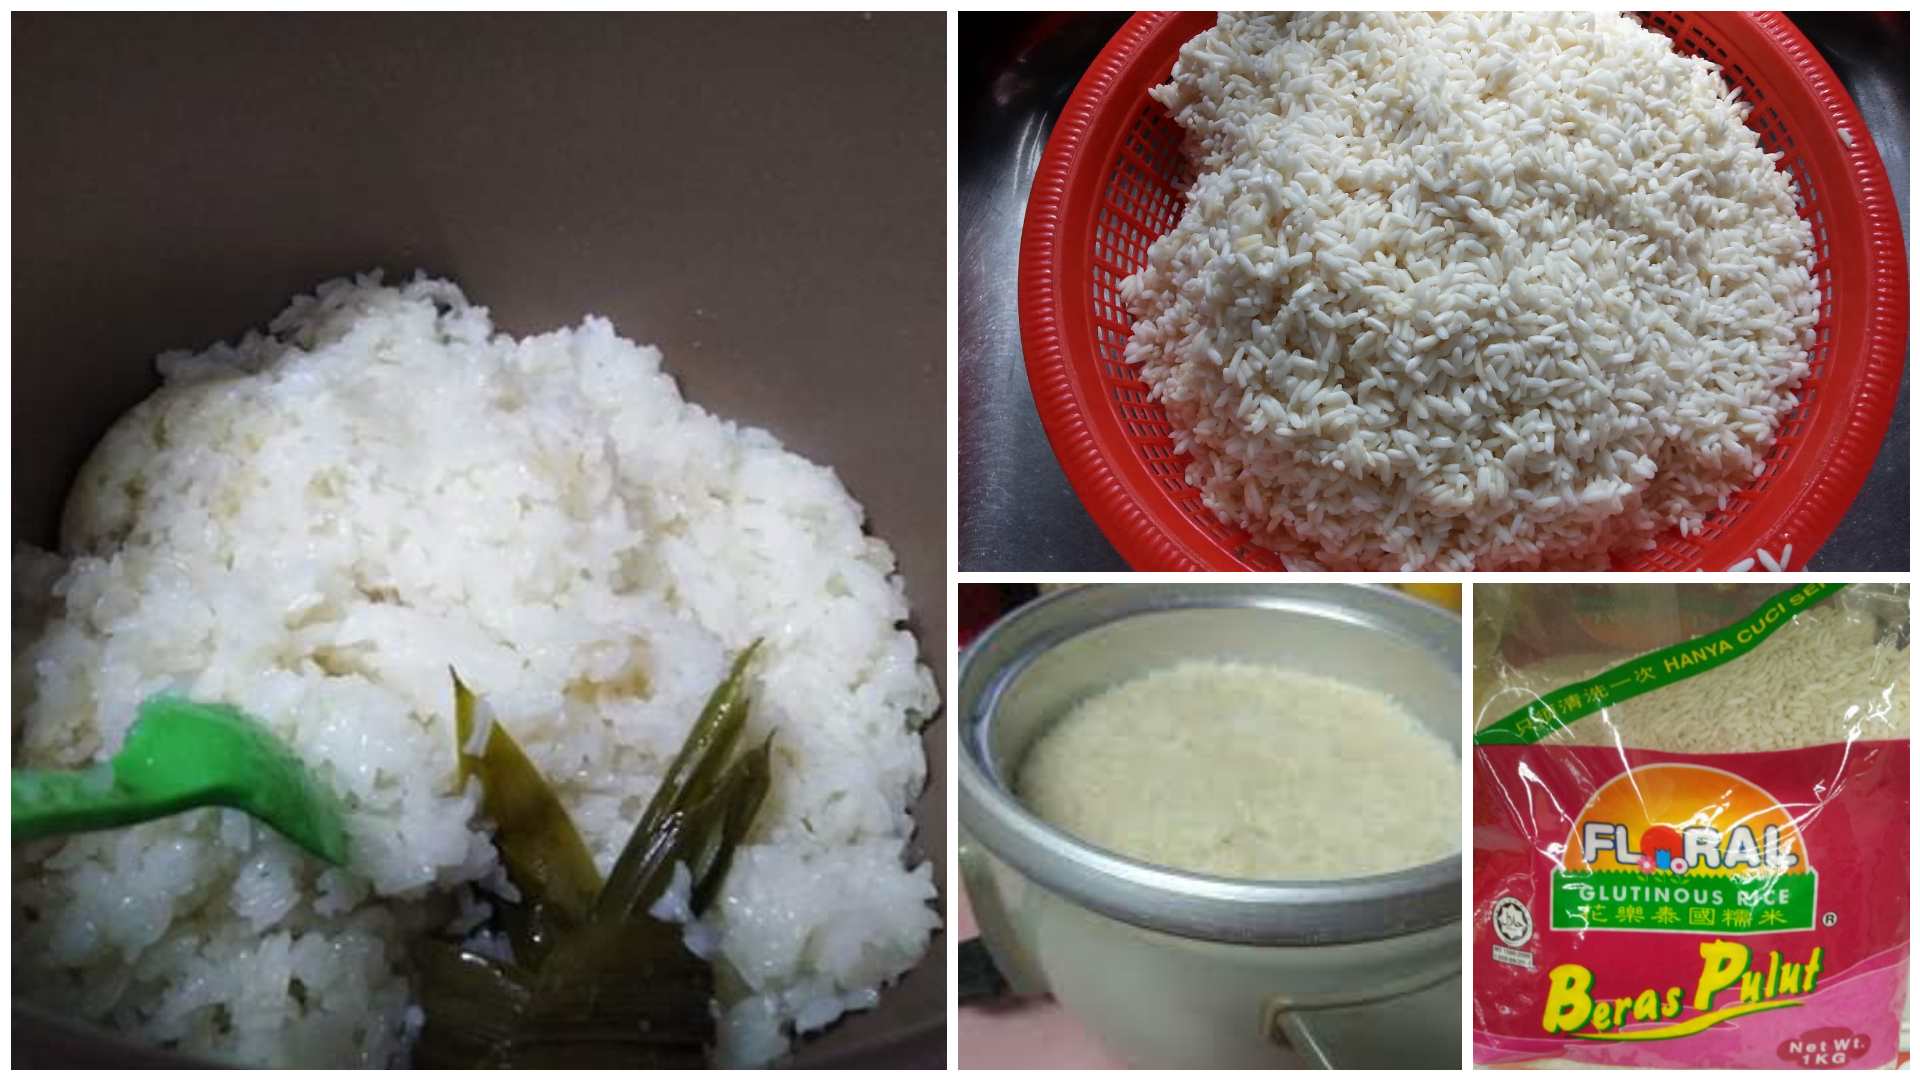 Cara Masak Pulut Ekspres Guna Rice Cooker Mudah Menjadi Elok Je